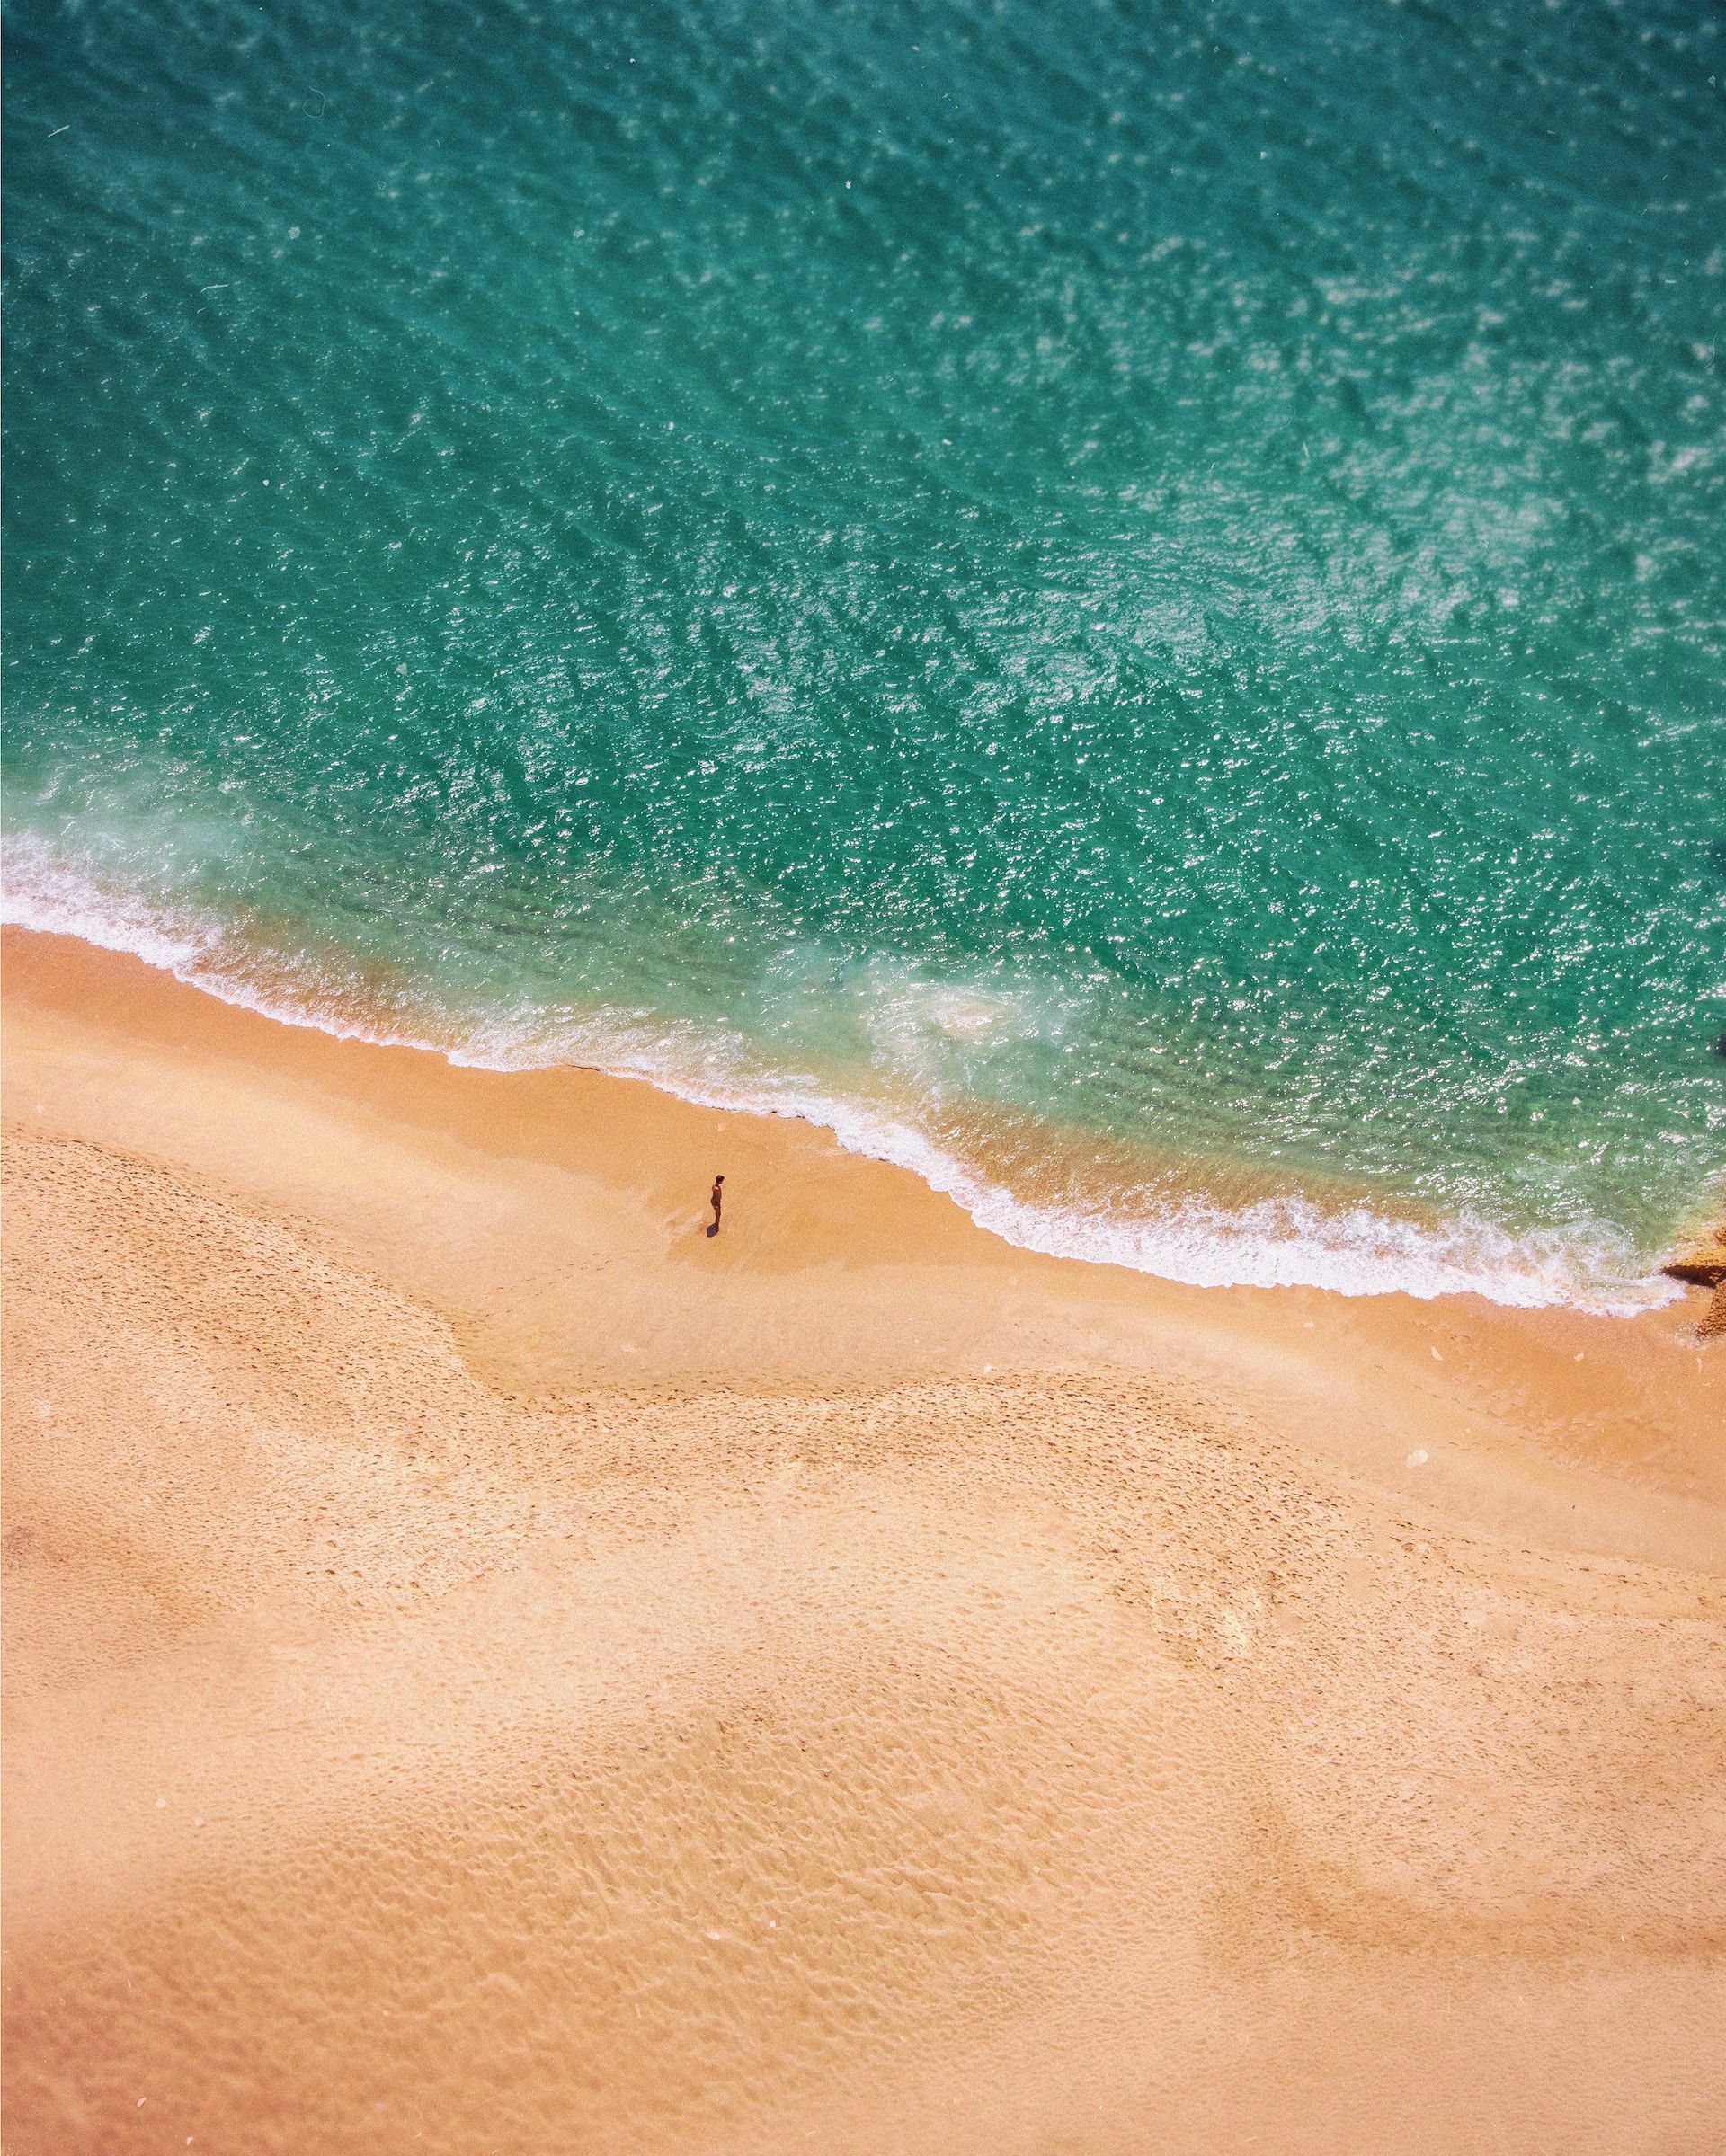 une personne seule sur une plage déserte, vue d'avion - Photo by Aurelien Thomas on https://unsplash.com/fr/photos/photographie-dun-plan-deau-OH6wENAdB98